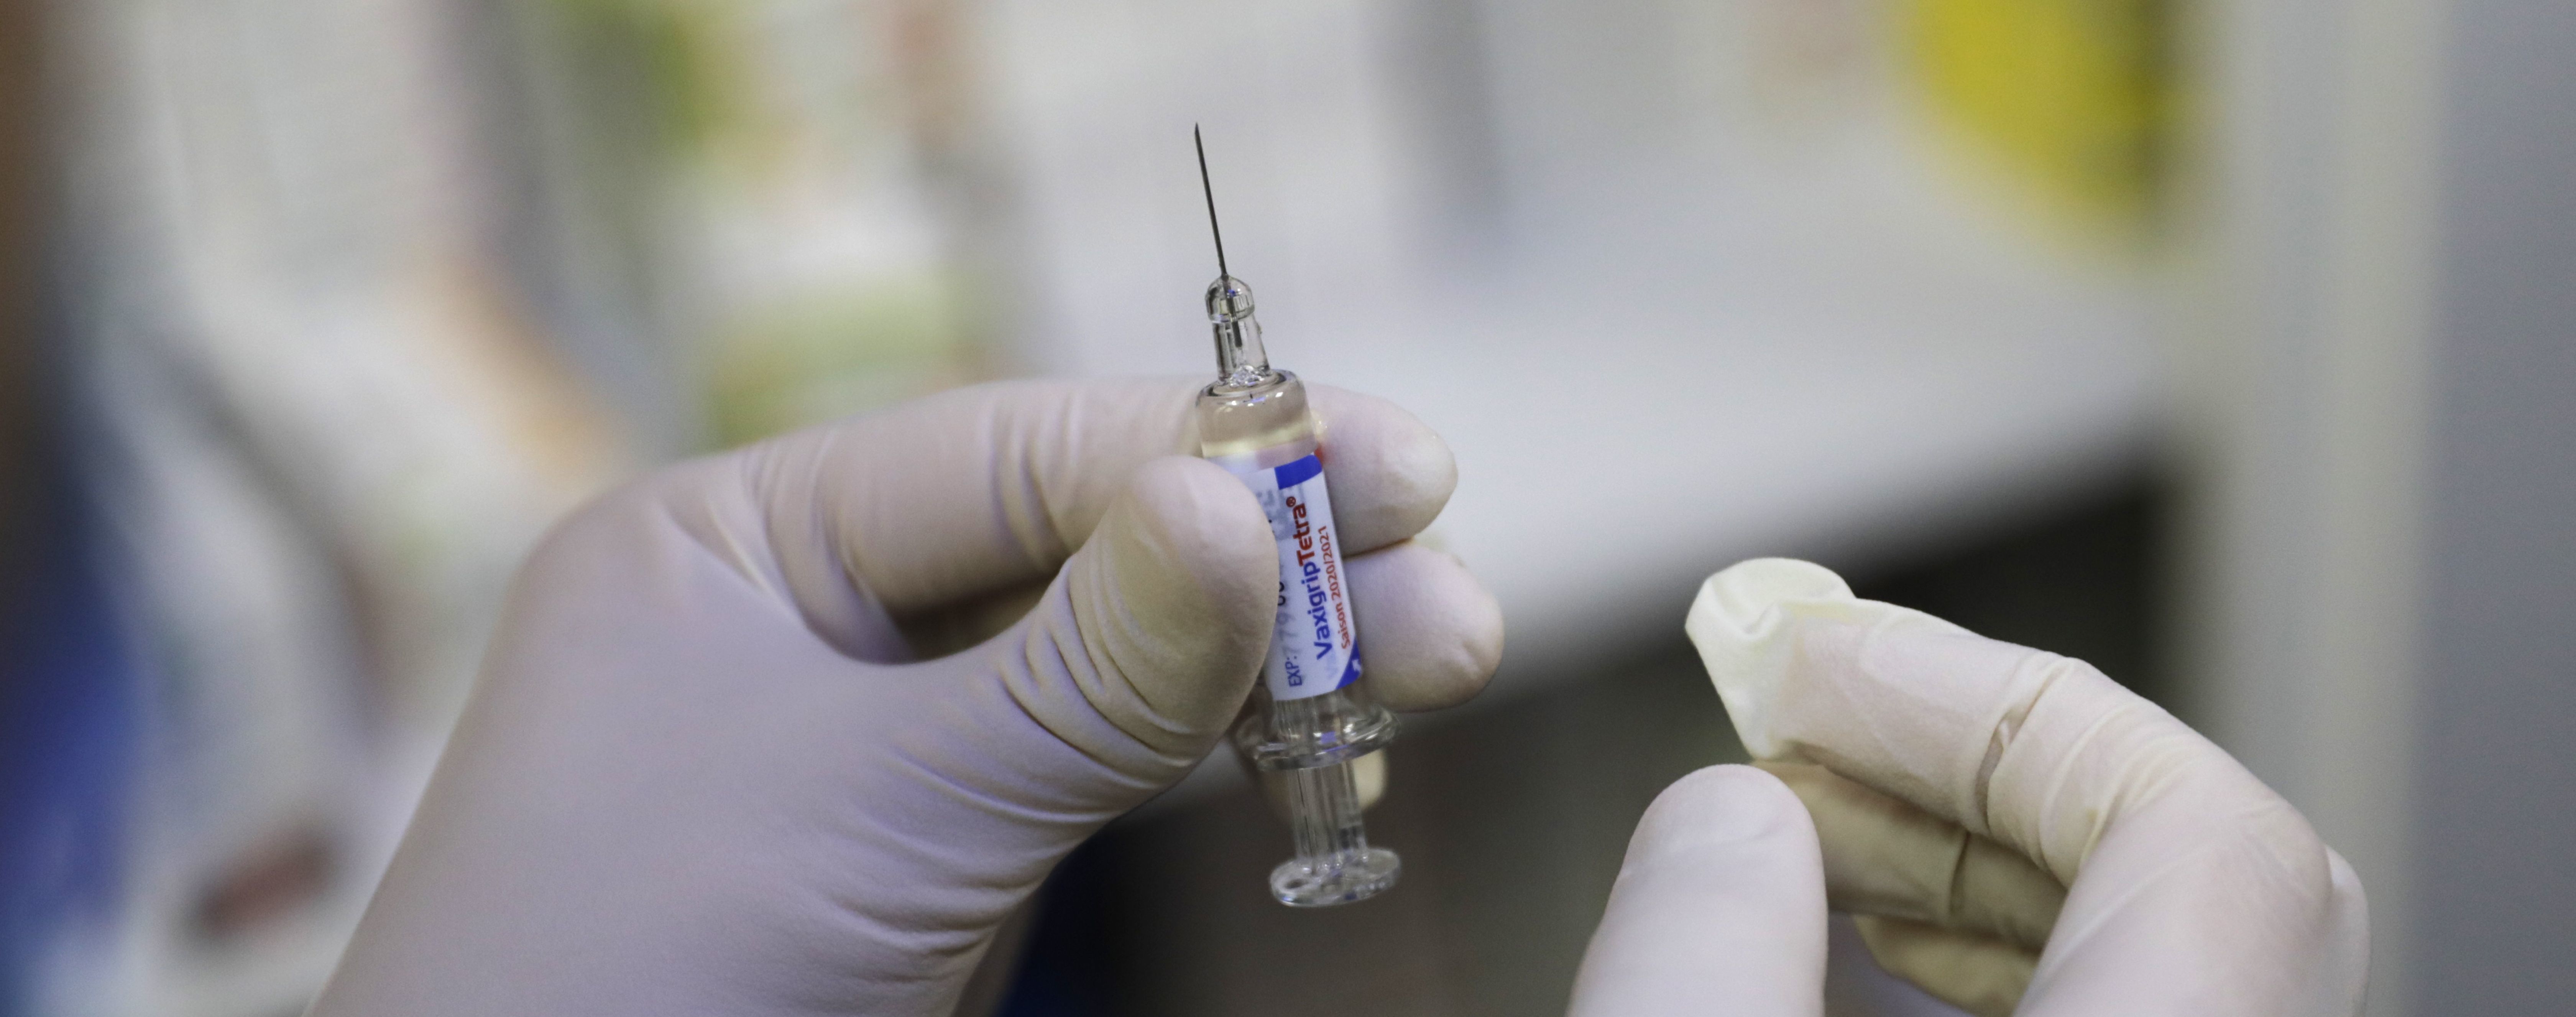 Уже в грудні Британія може почати застосовувати вакцину проти COVID-19